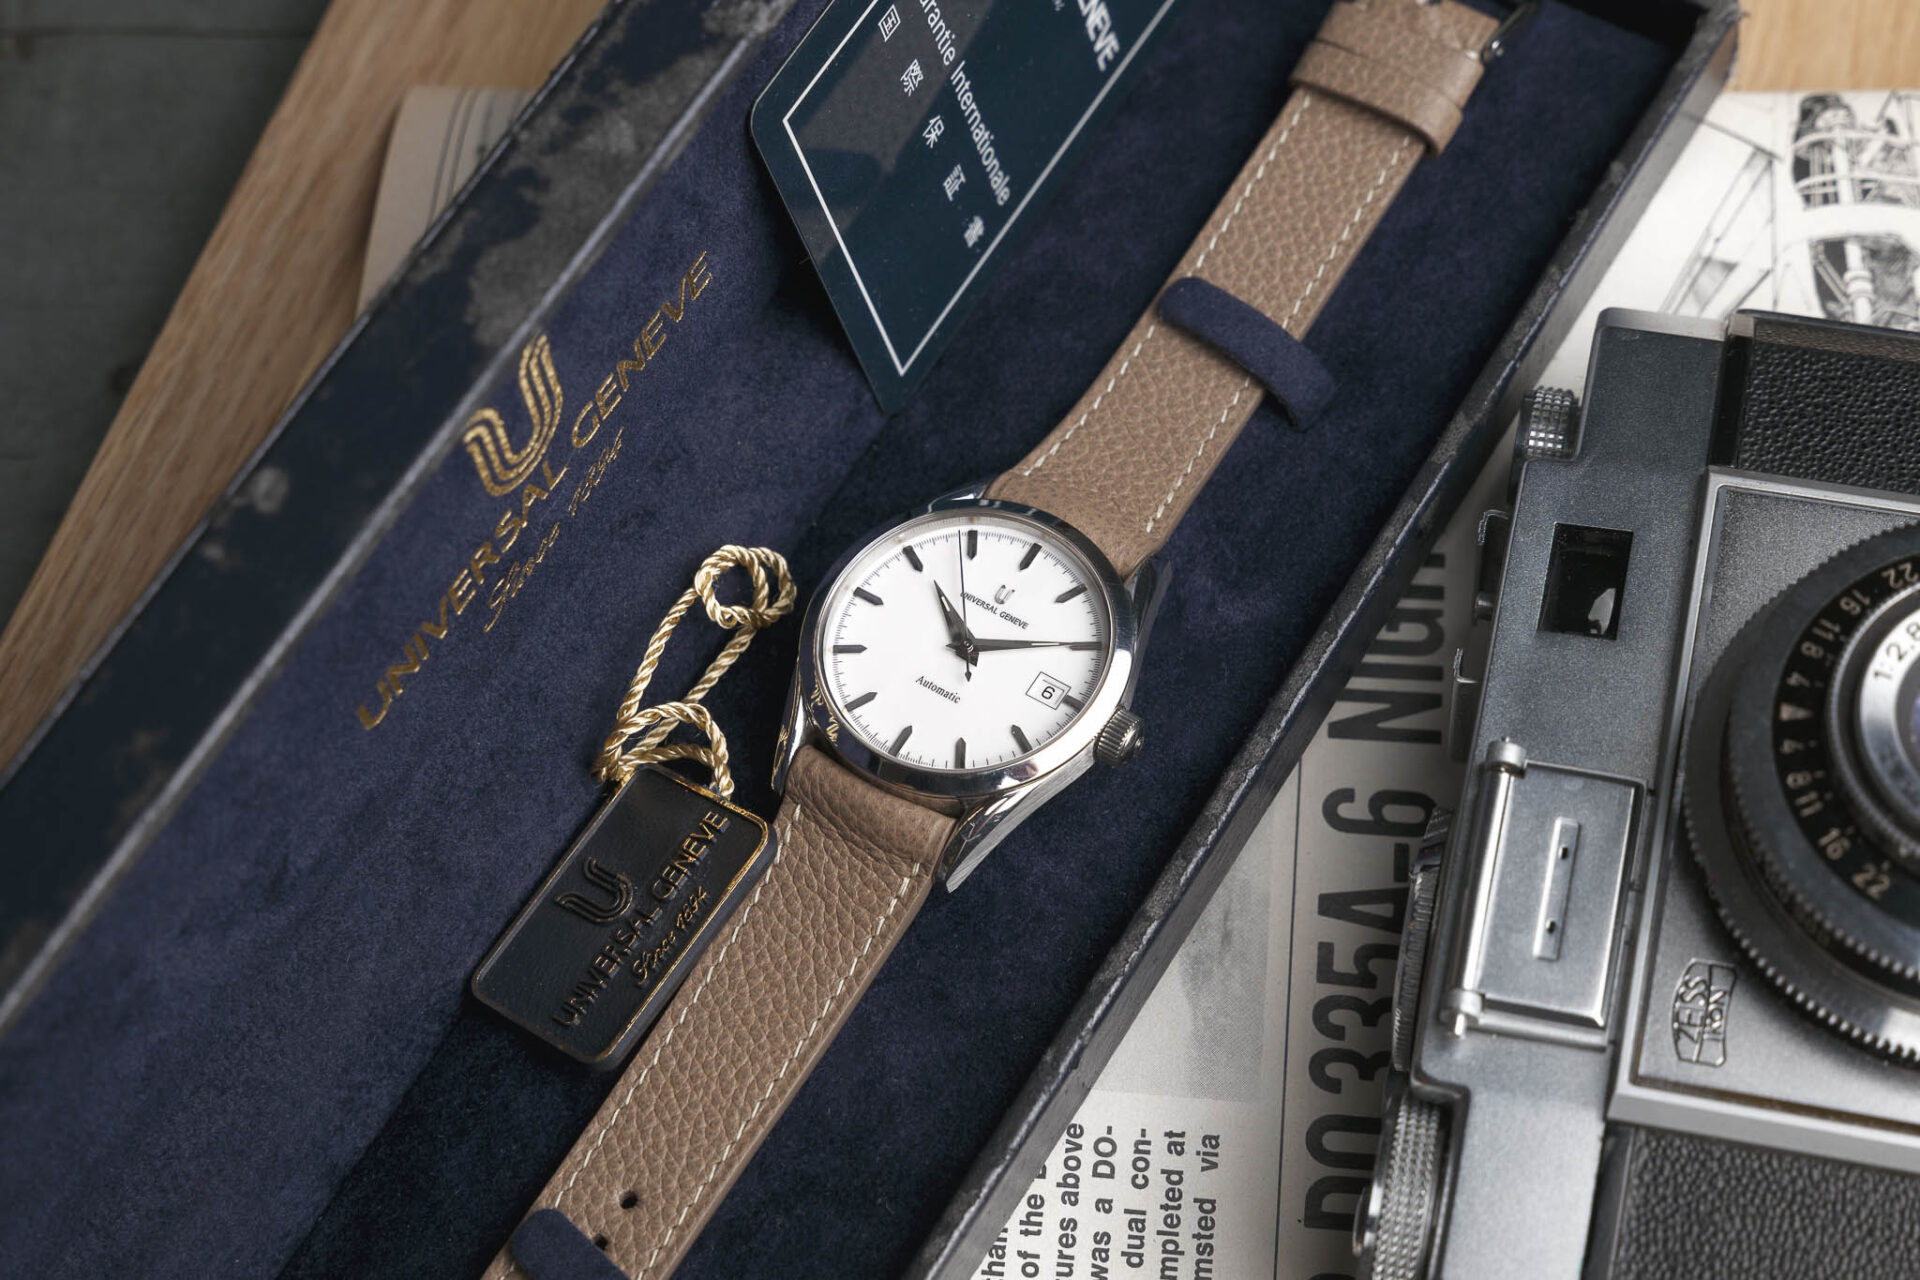 Universal Genève Automatic - Sélection de montres vintage Joseph Bonnie septembre 2023